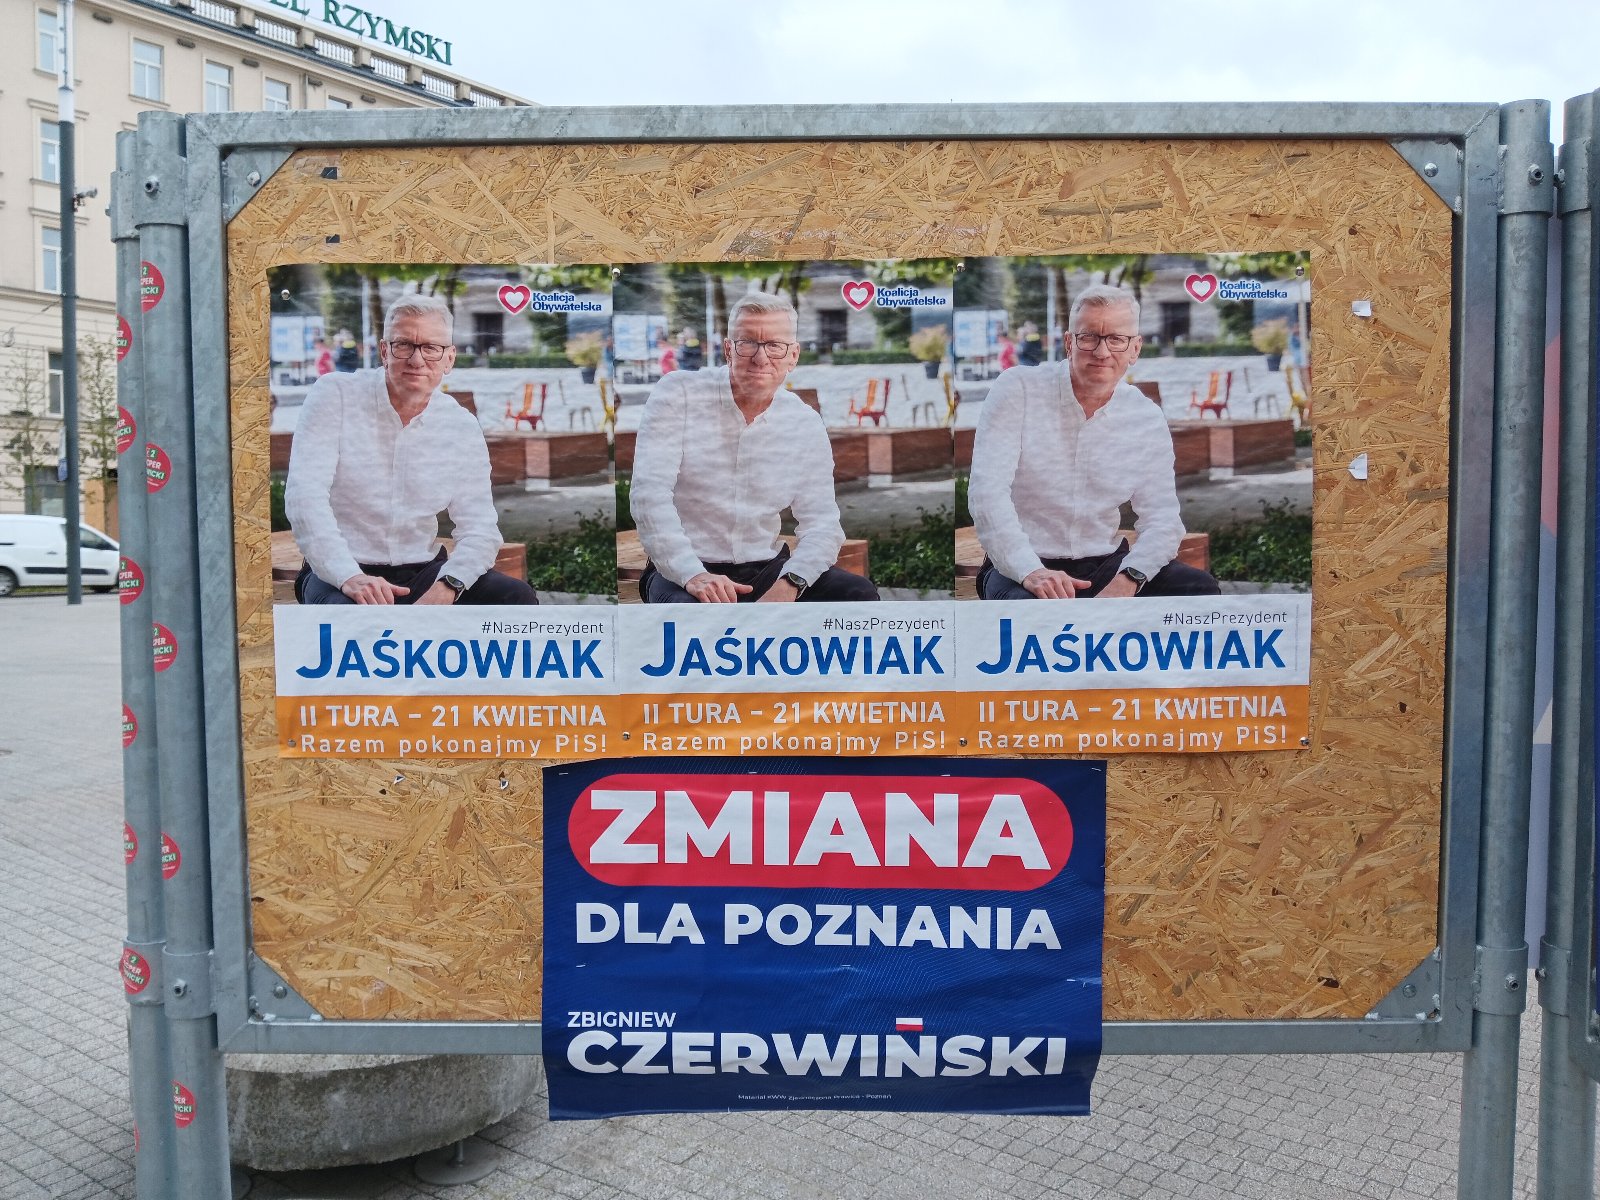 Tablica z plakatami wyborczymi, na górze tablicy trzy plakaty przedstawuająca mężczyznę w białej koszuli, siwych włosach i okularach, który siedzi na ławce, za nim drzwa, podpis "Jaśkowiak", na plakacie na dole napis "Zmiana dla Poznania Czerwiński" - grafika artykułu